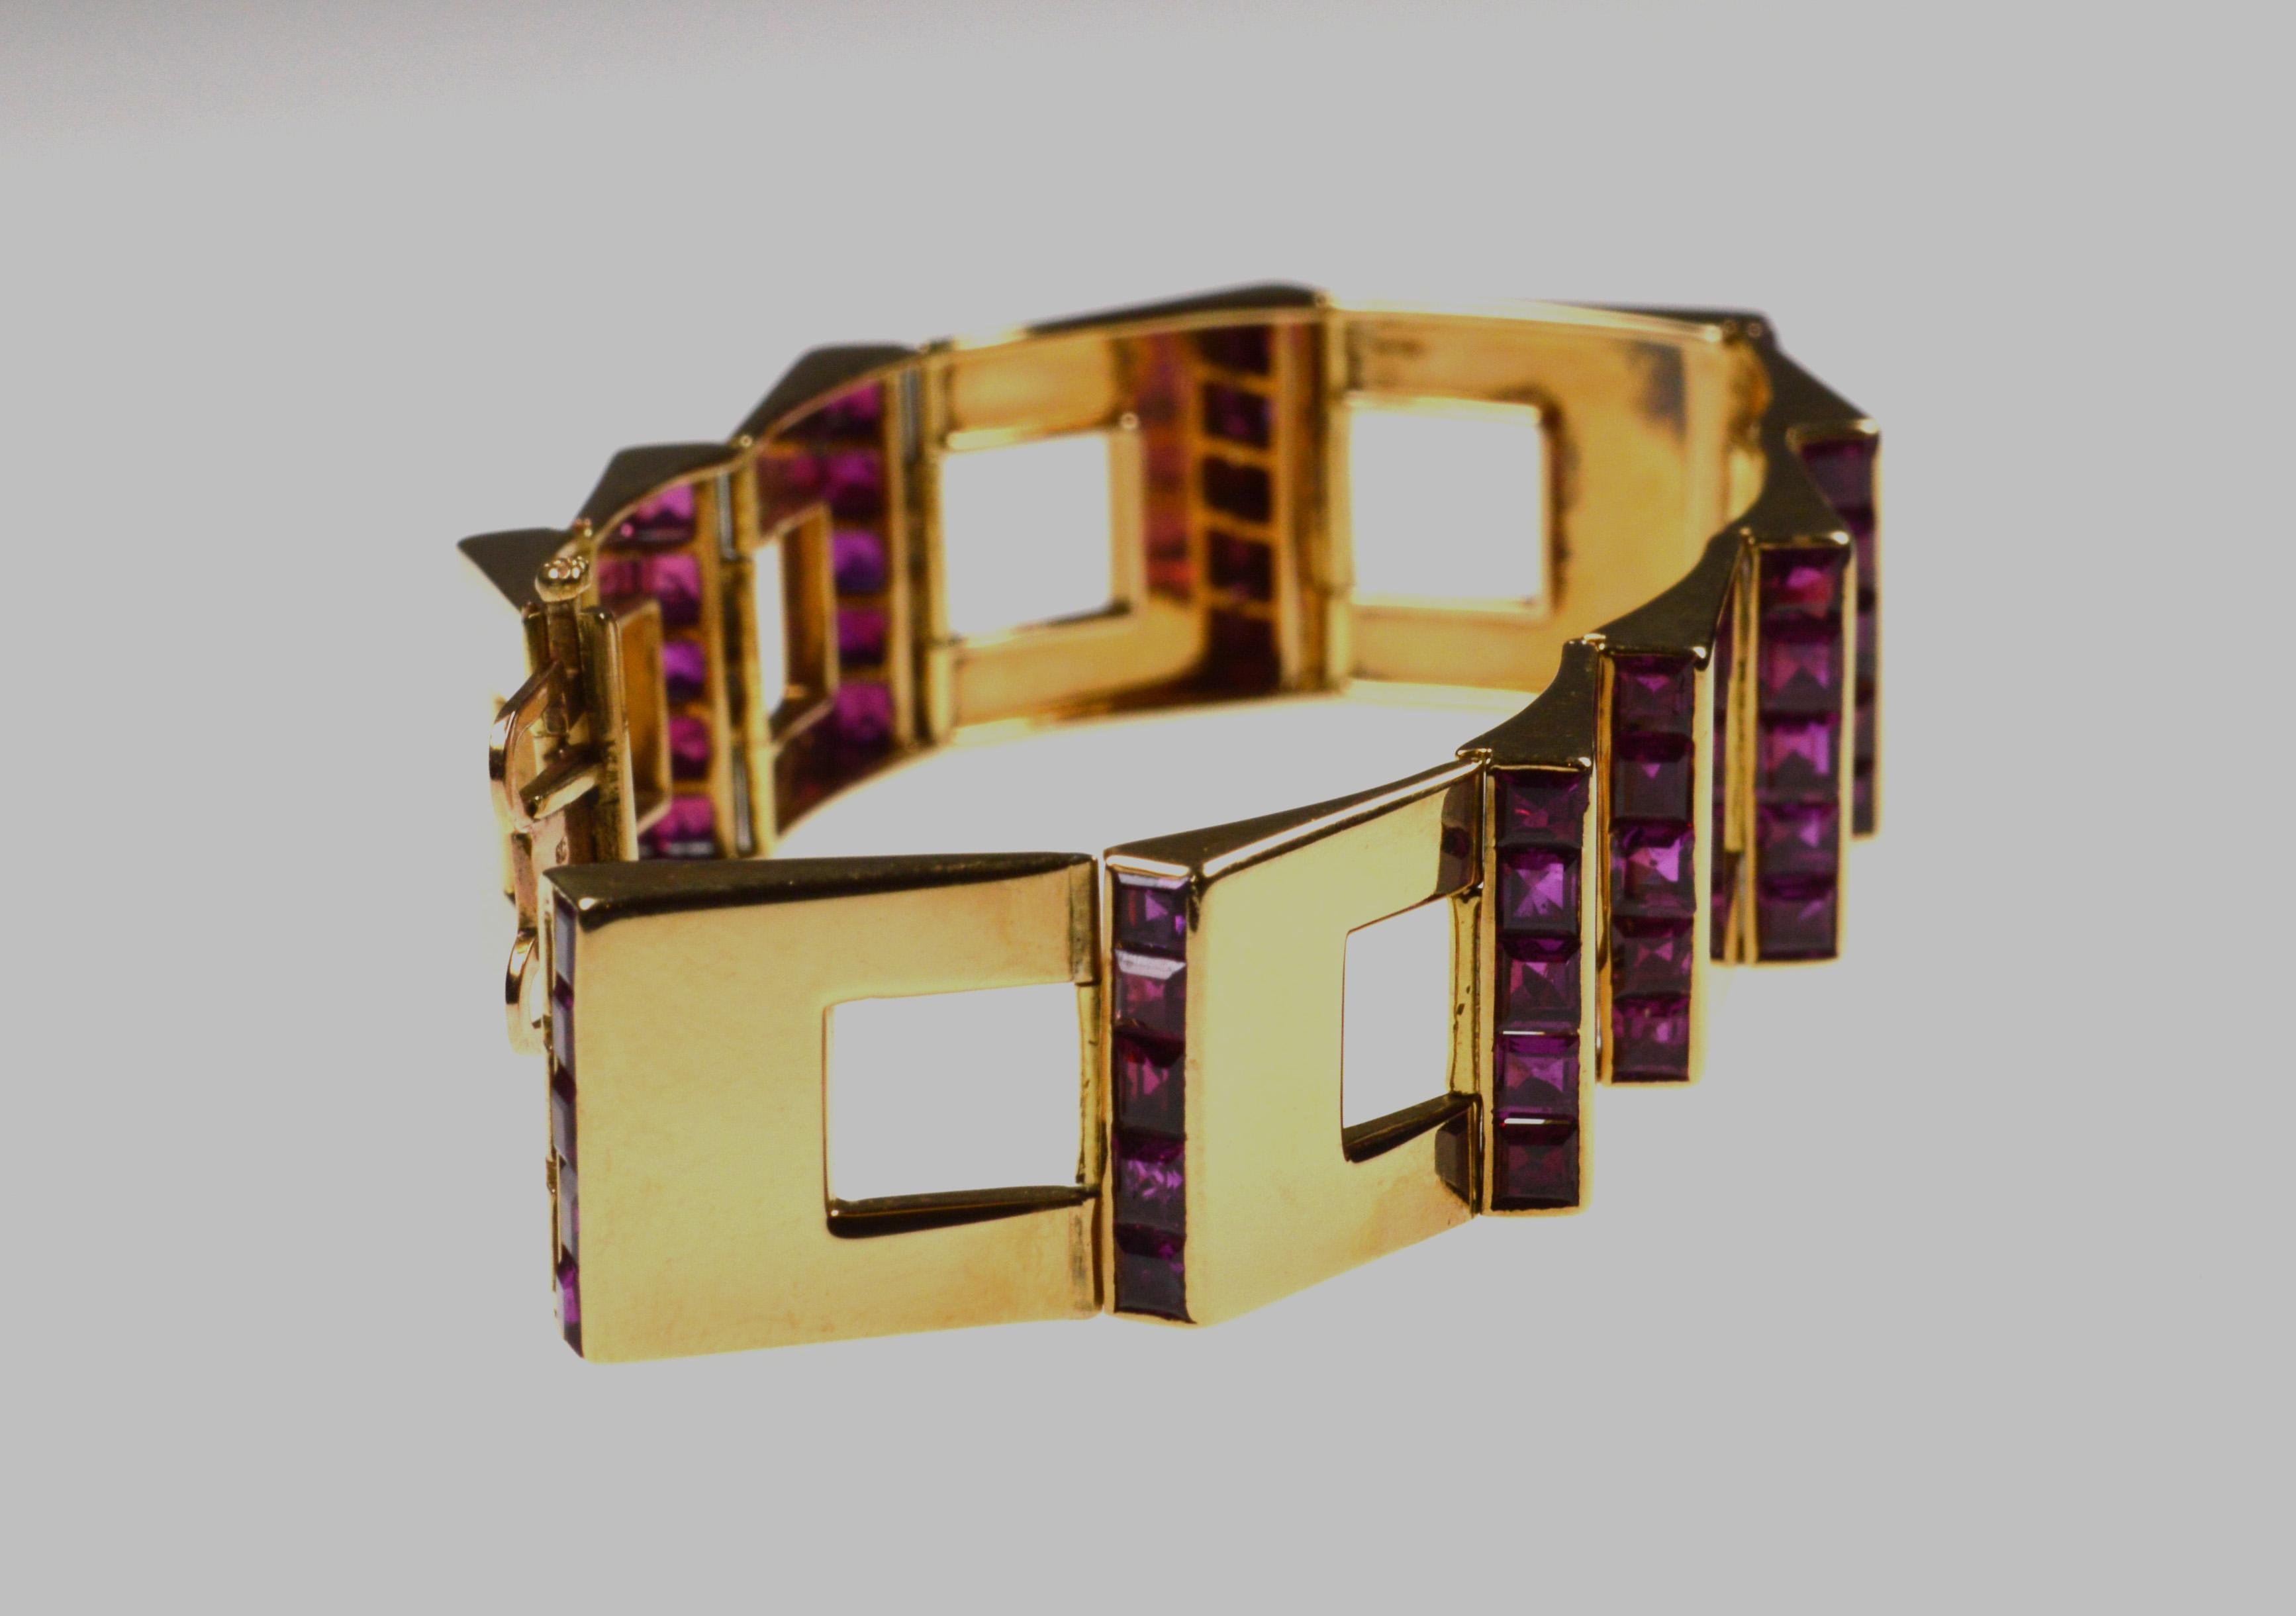 Cartier 1950s-1960s bracelet. Retro bracelet with carrée rubys in 18K rosé gold.
Signature: Cartier London
